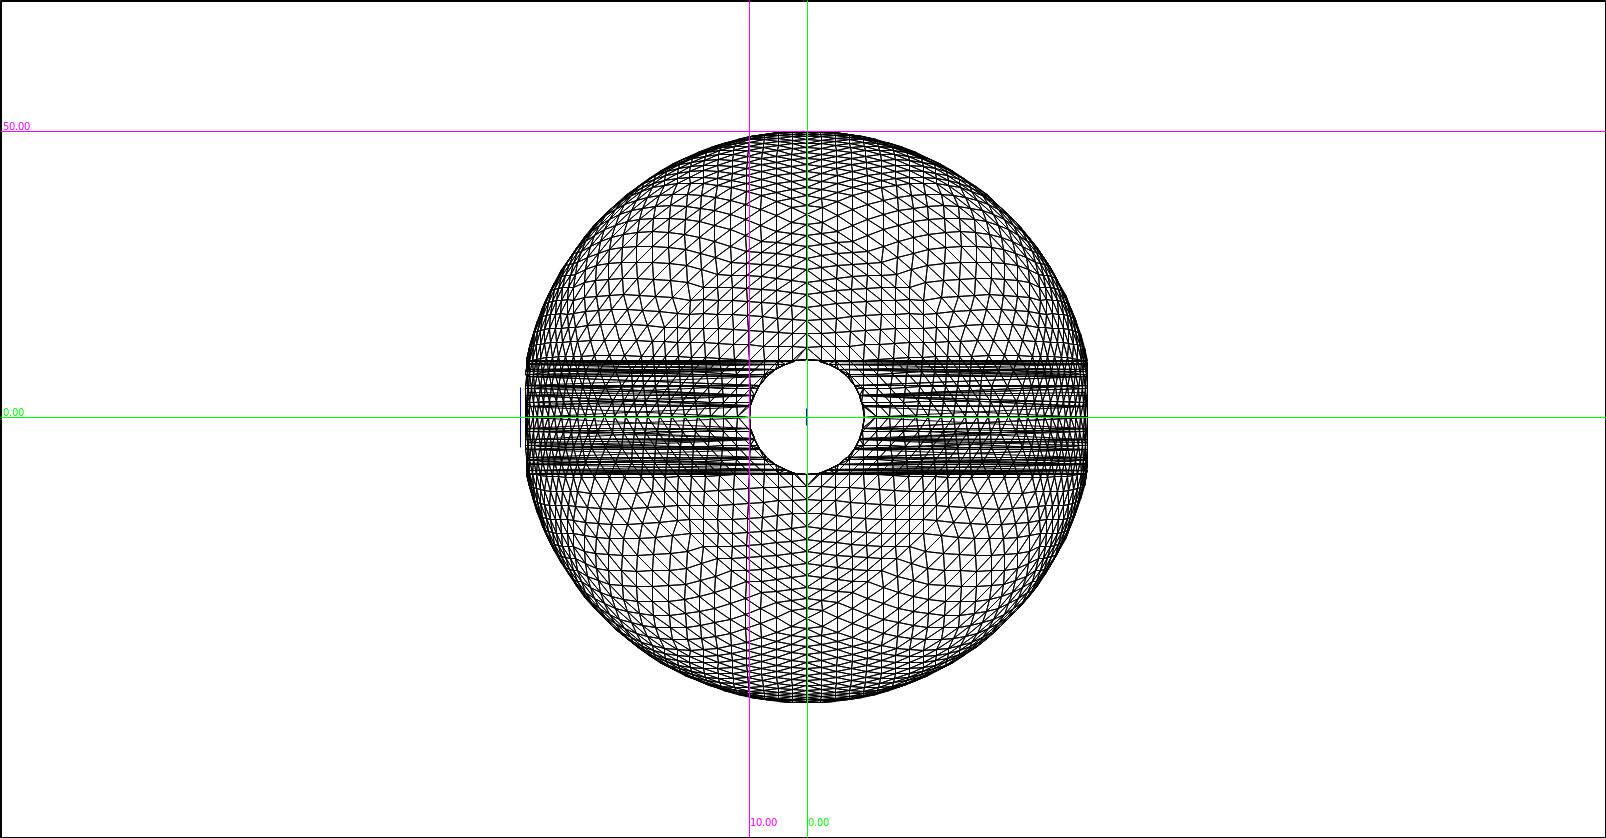 sphere2.jpg